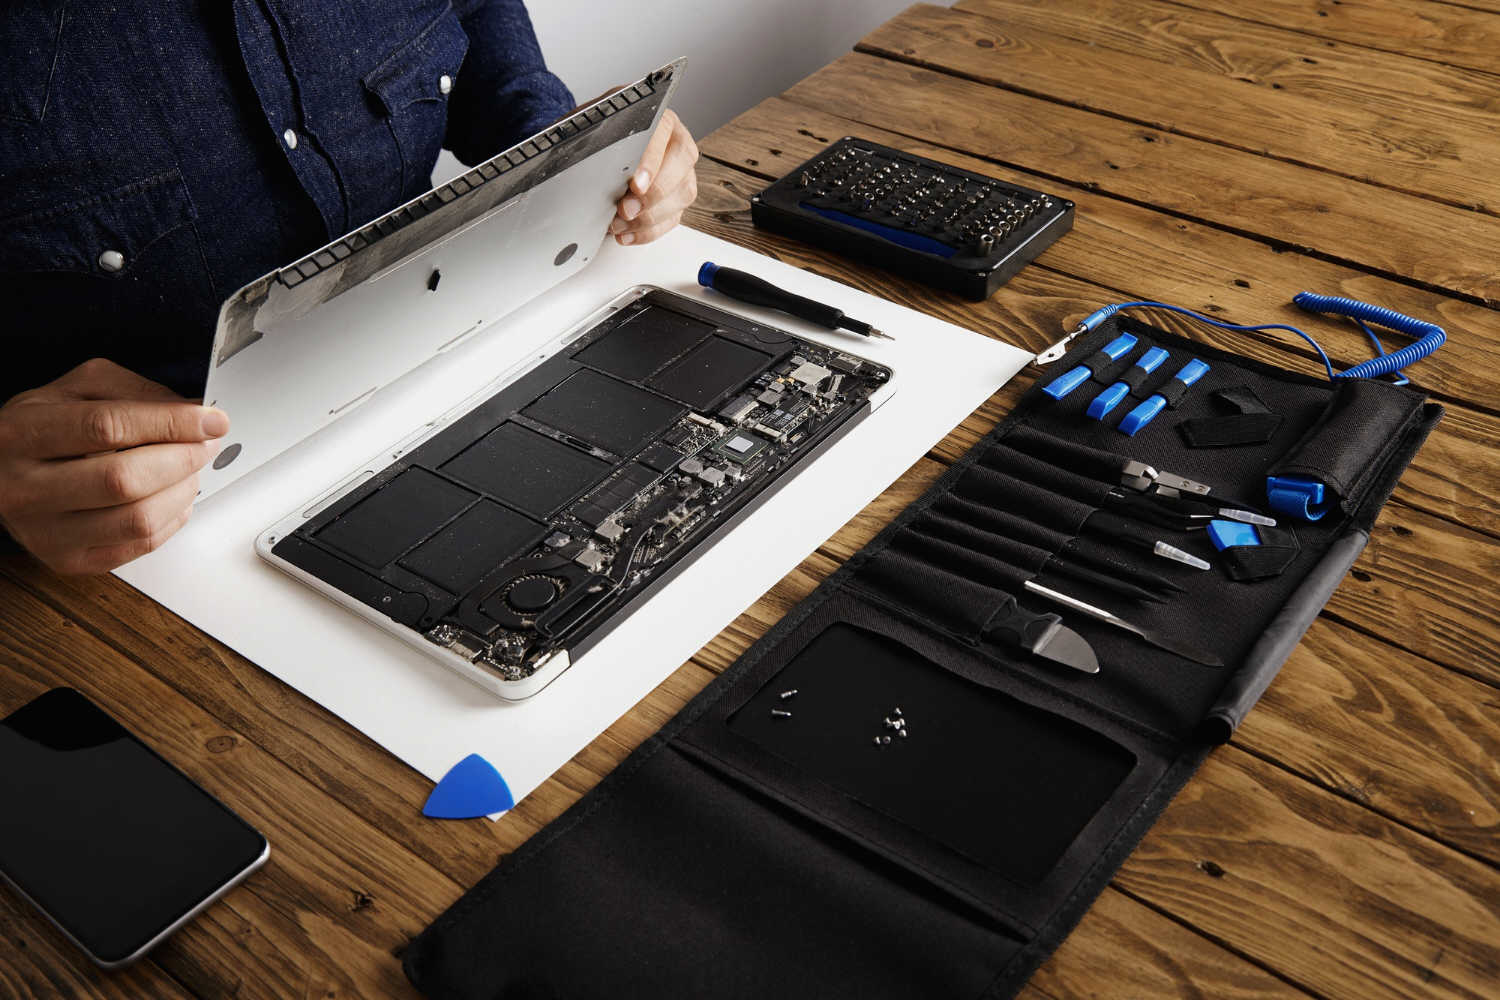 serwisant otwiera tylna pokrywe gornej czesci laptopa przed naprawa czyszczeniem i naprawa za pomoca swoich profesjonalnych narzedzi z pudelka z narzedziami w poblizu drewnianego stolu